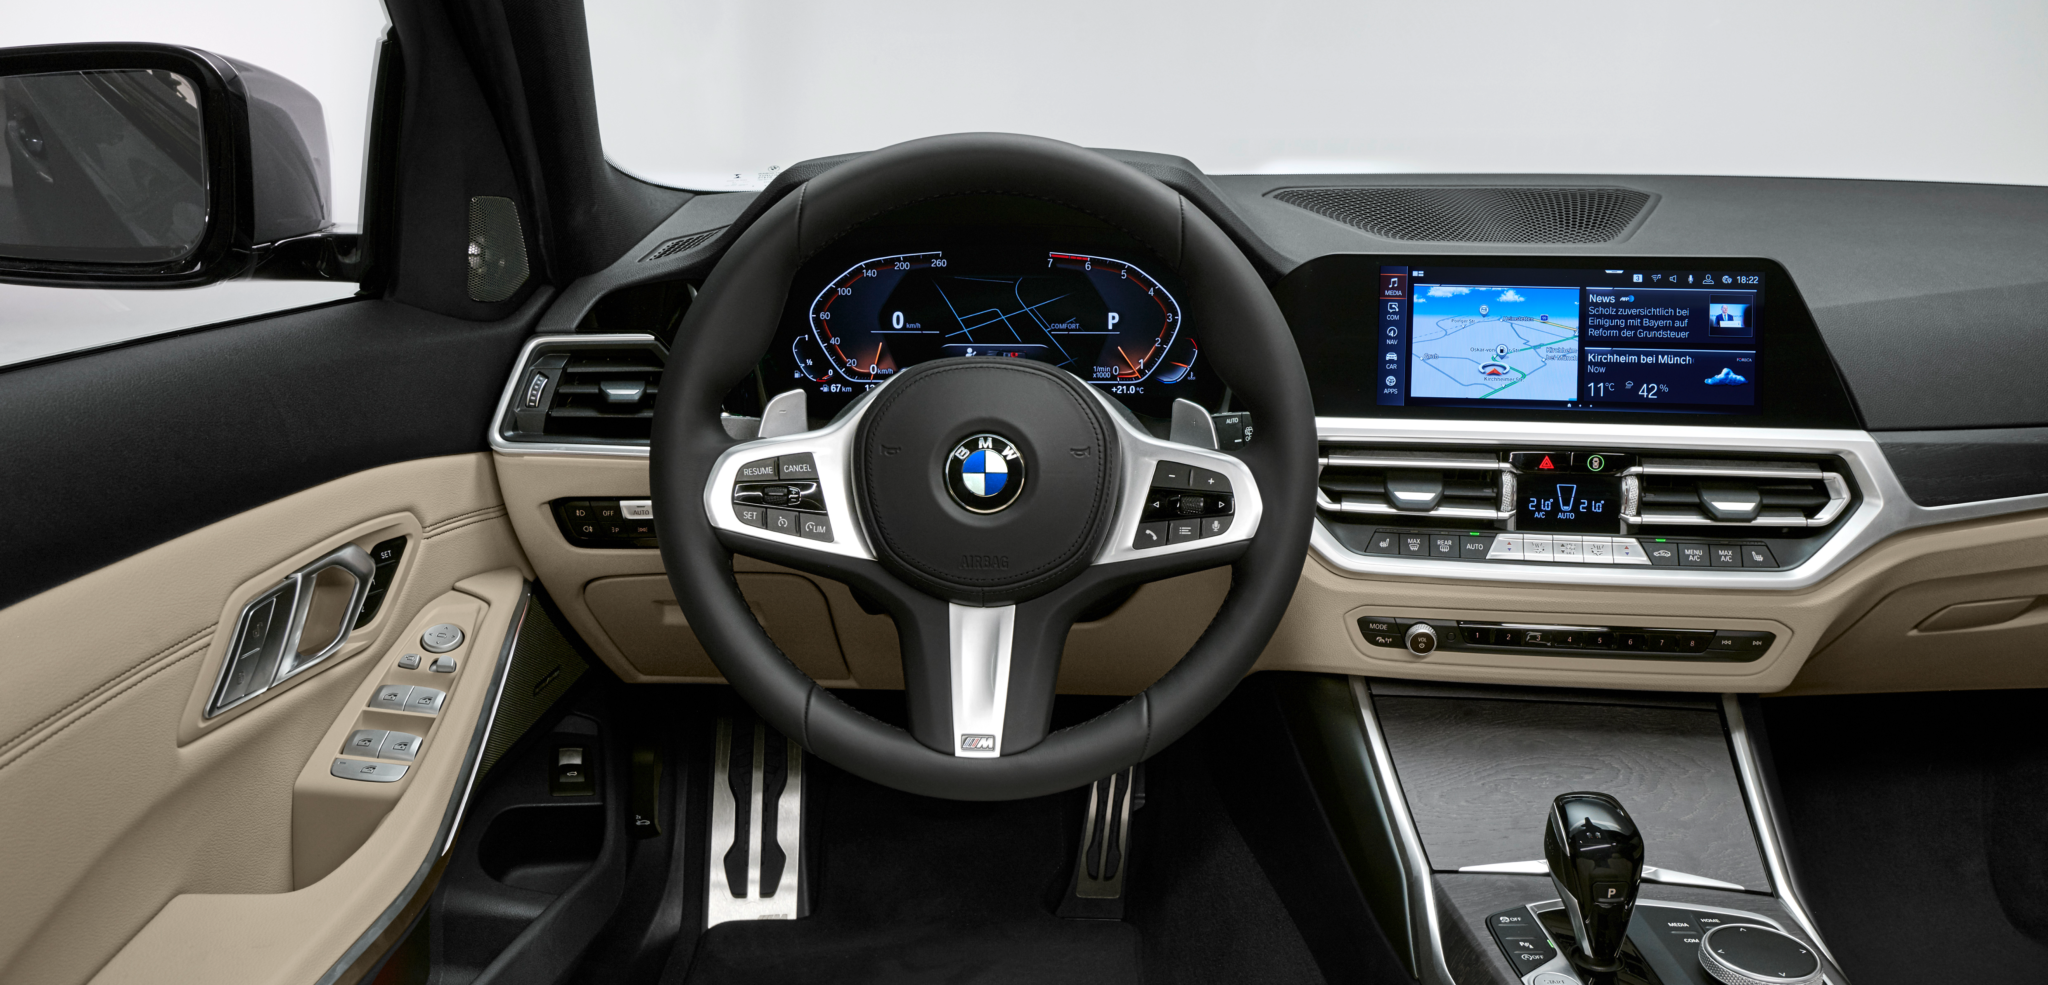 P90351261 highRes - BMW Serie 3 Touring 2019: un familiar más grande cargado de tecnología